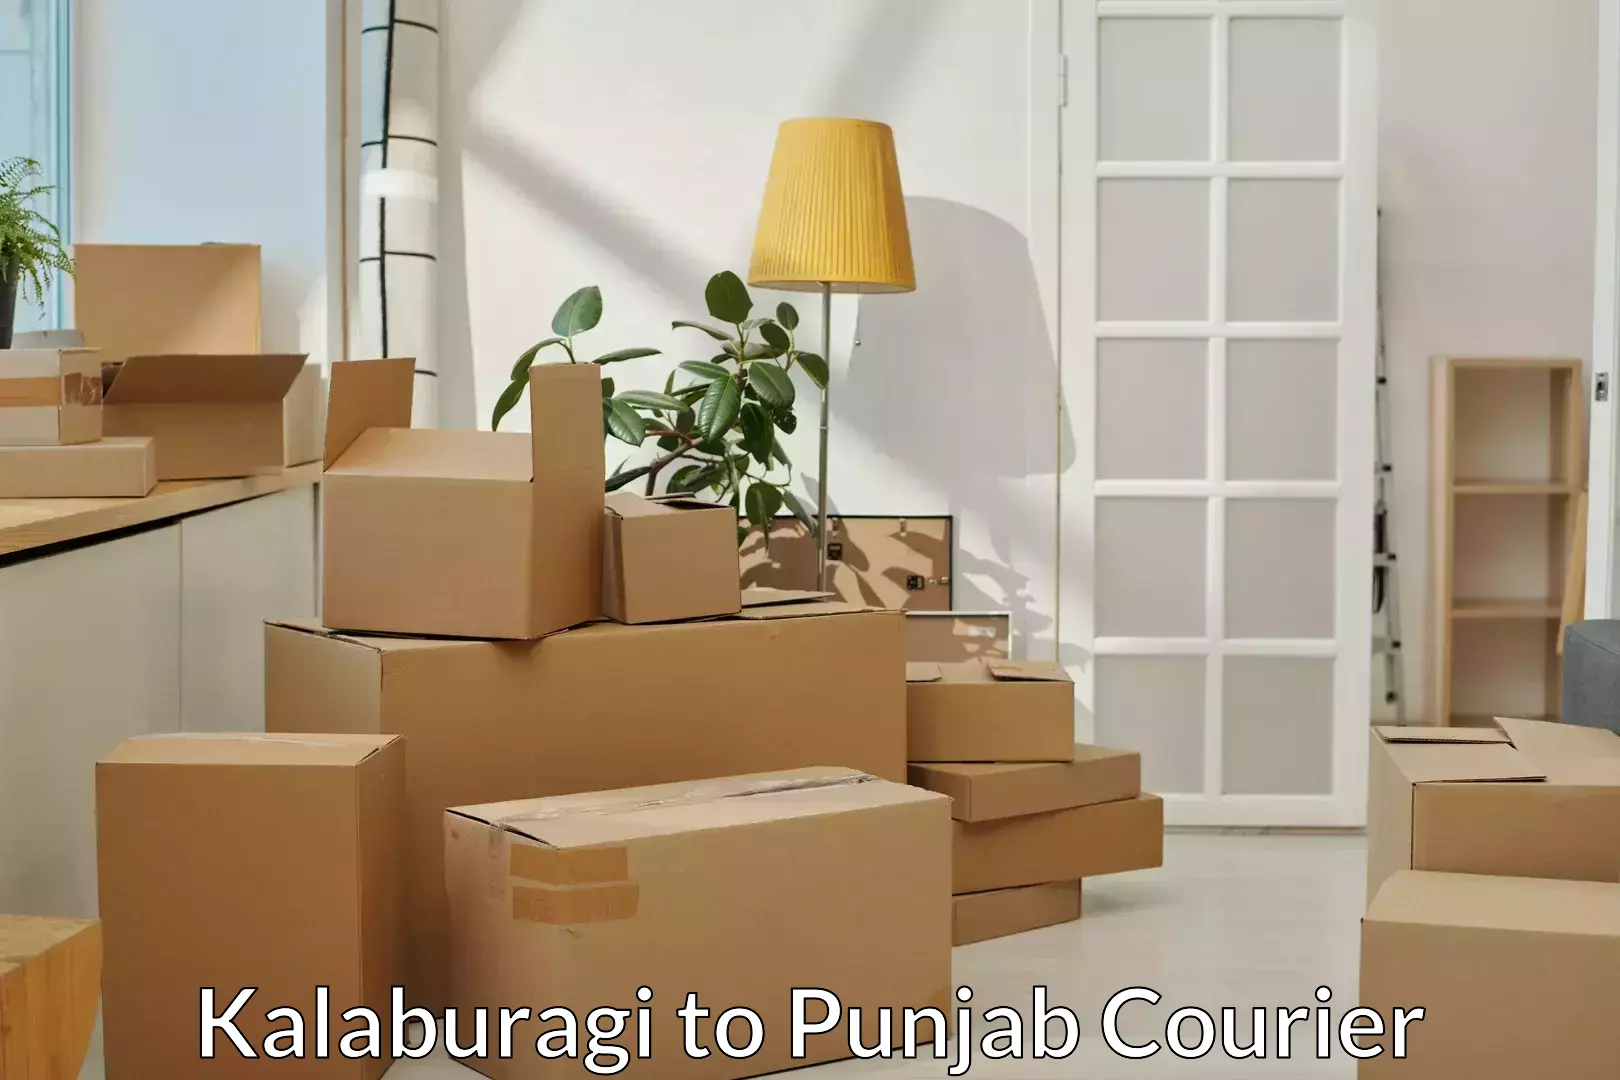 Furniture moving experts Kalaburagi to Punjab